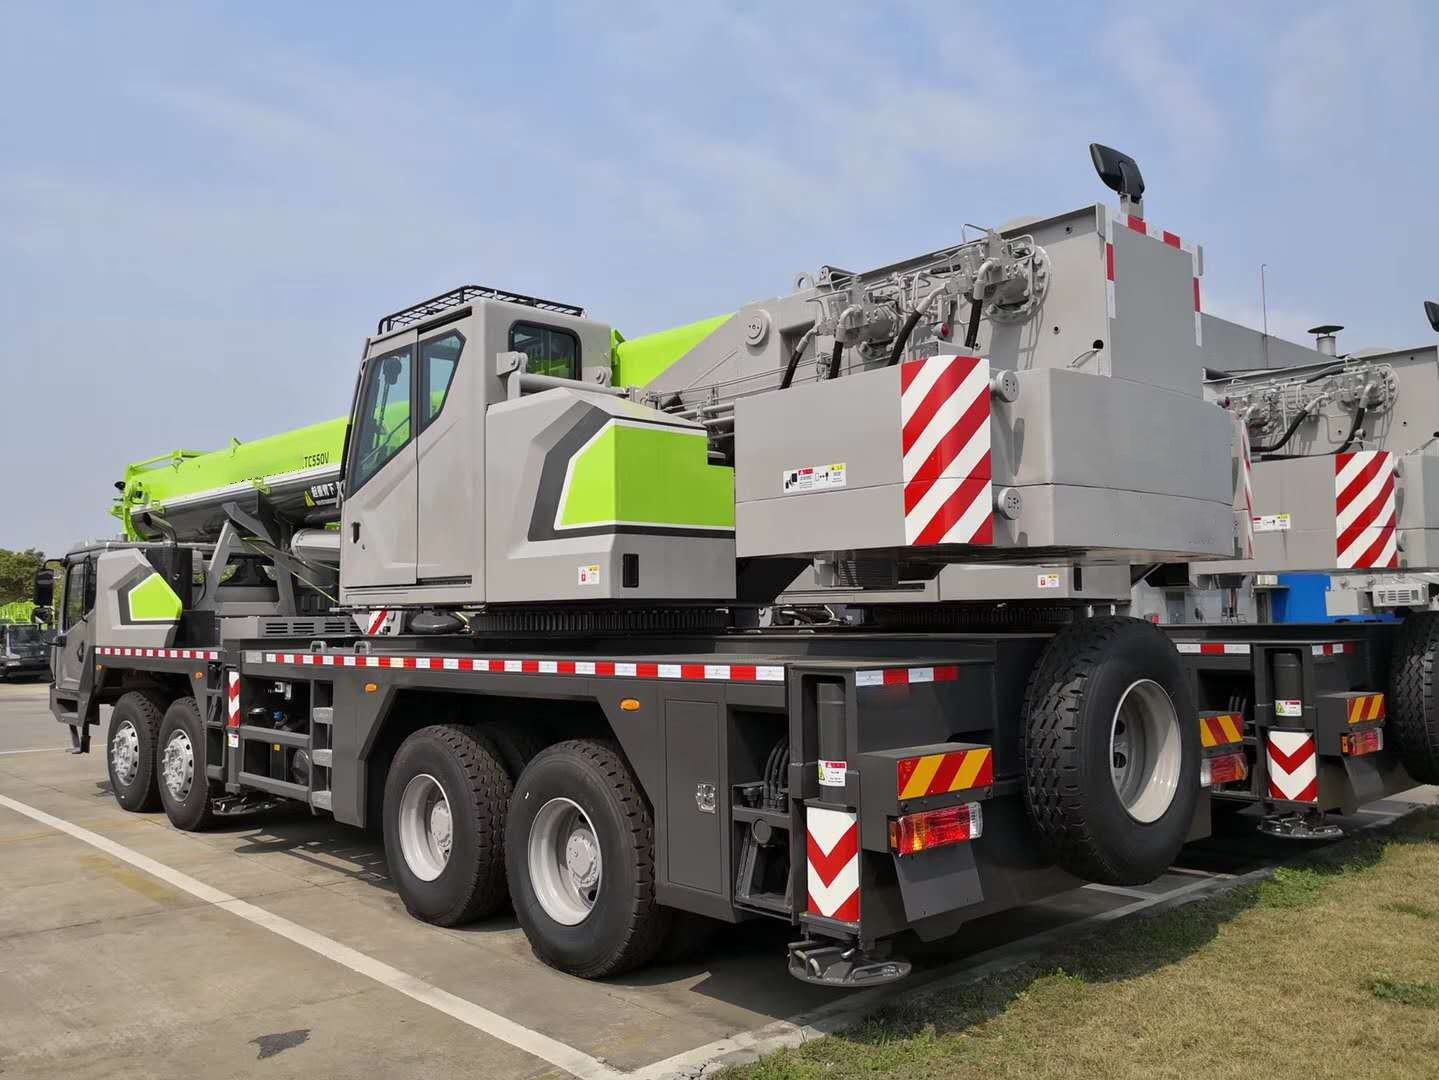 
                Строительное подъемное оборудование Новый грузовой автомобиль грузоподъемностью 55 тонн кран Ztc550V
            